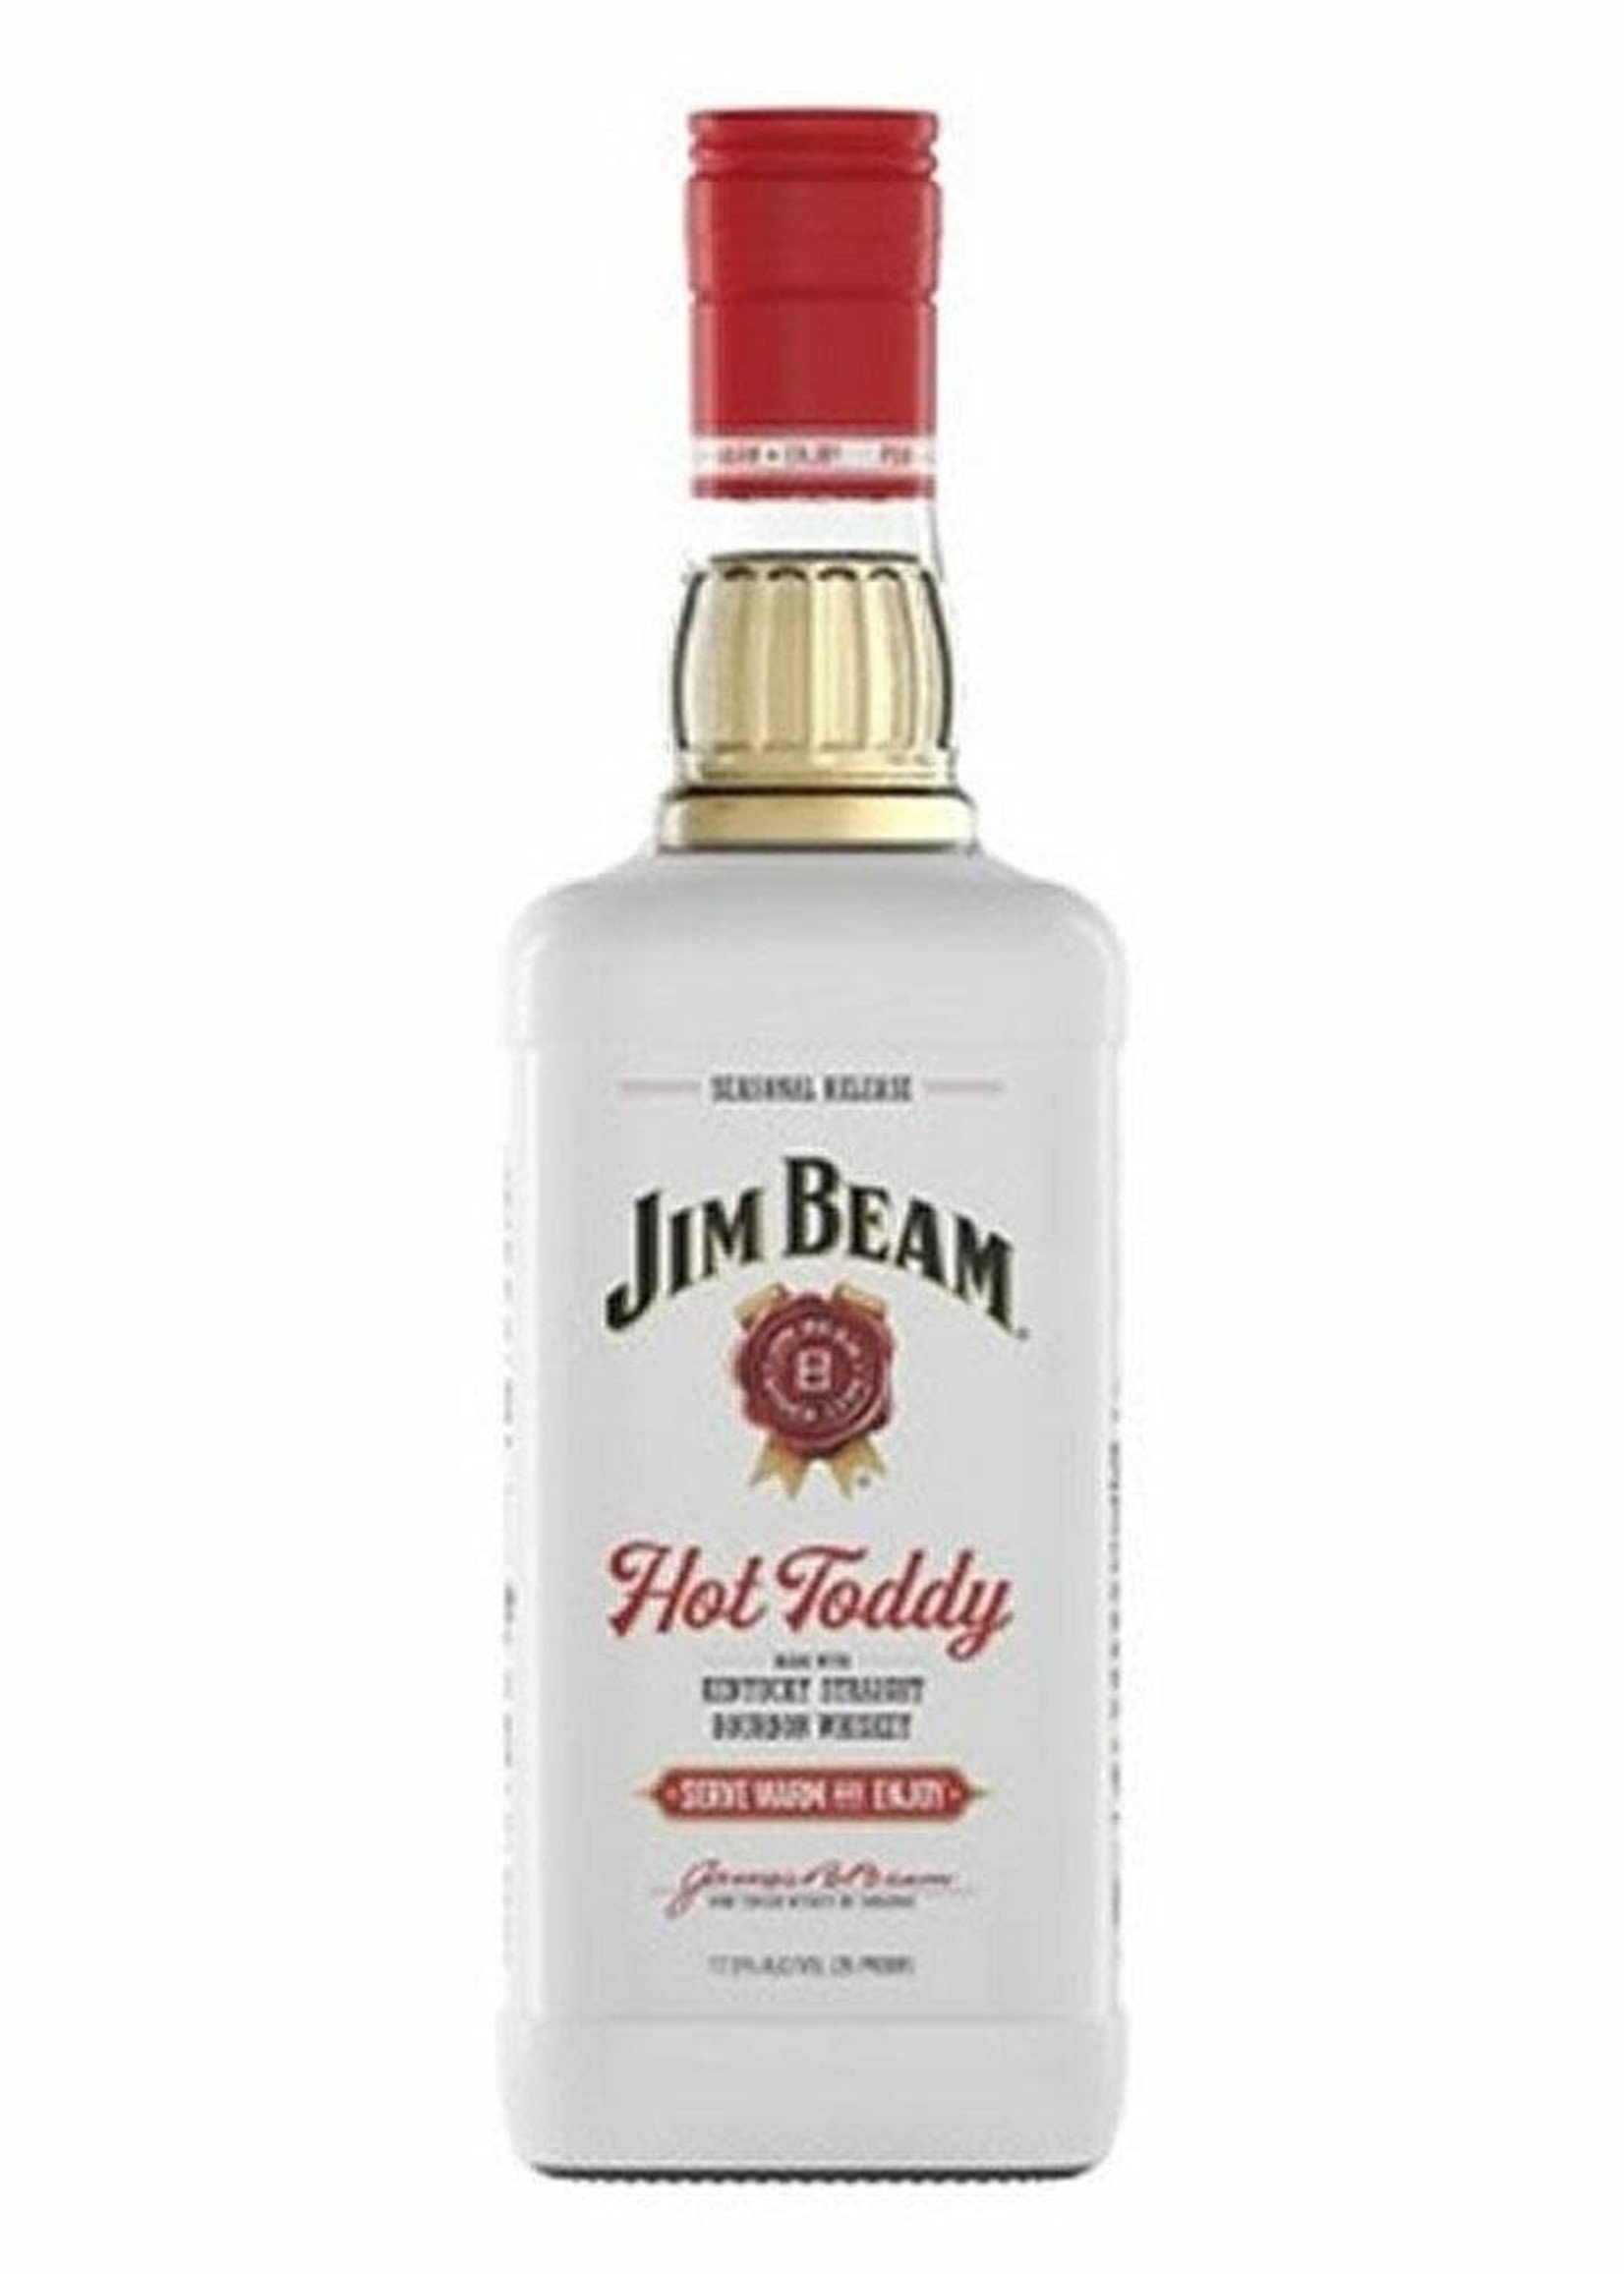 Jim Beam Jim Beam Hot Toddy